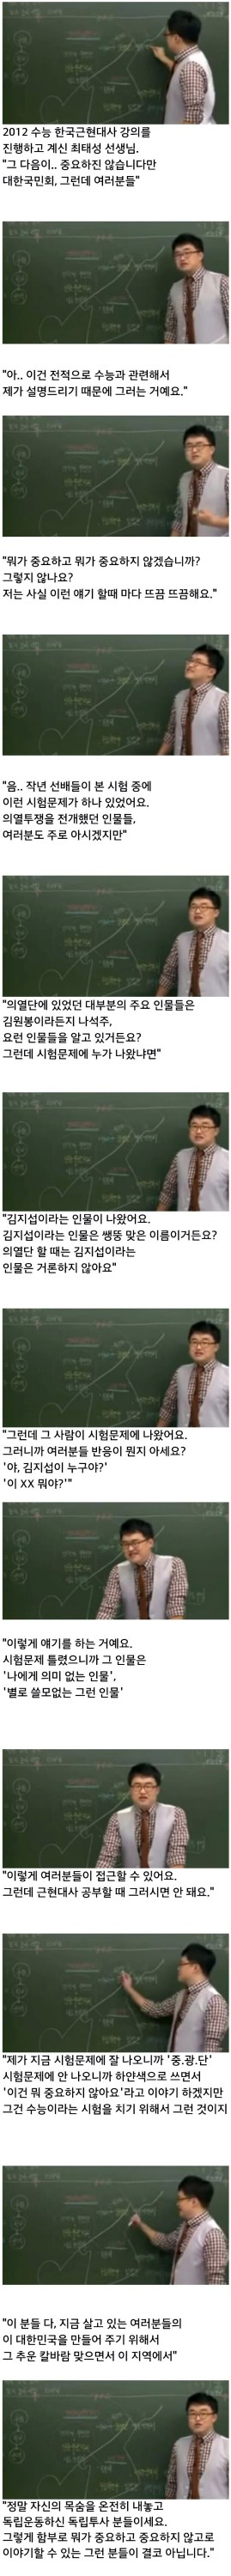 한국사 큰별 최태성 선생님의 당부